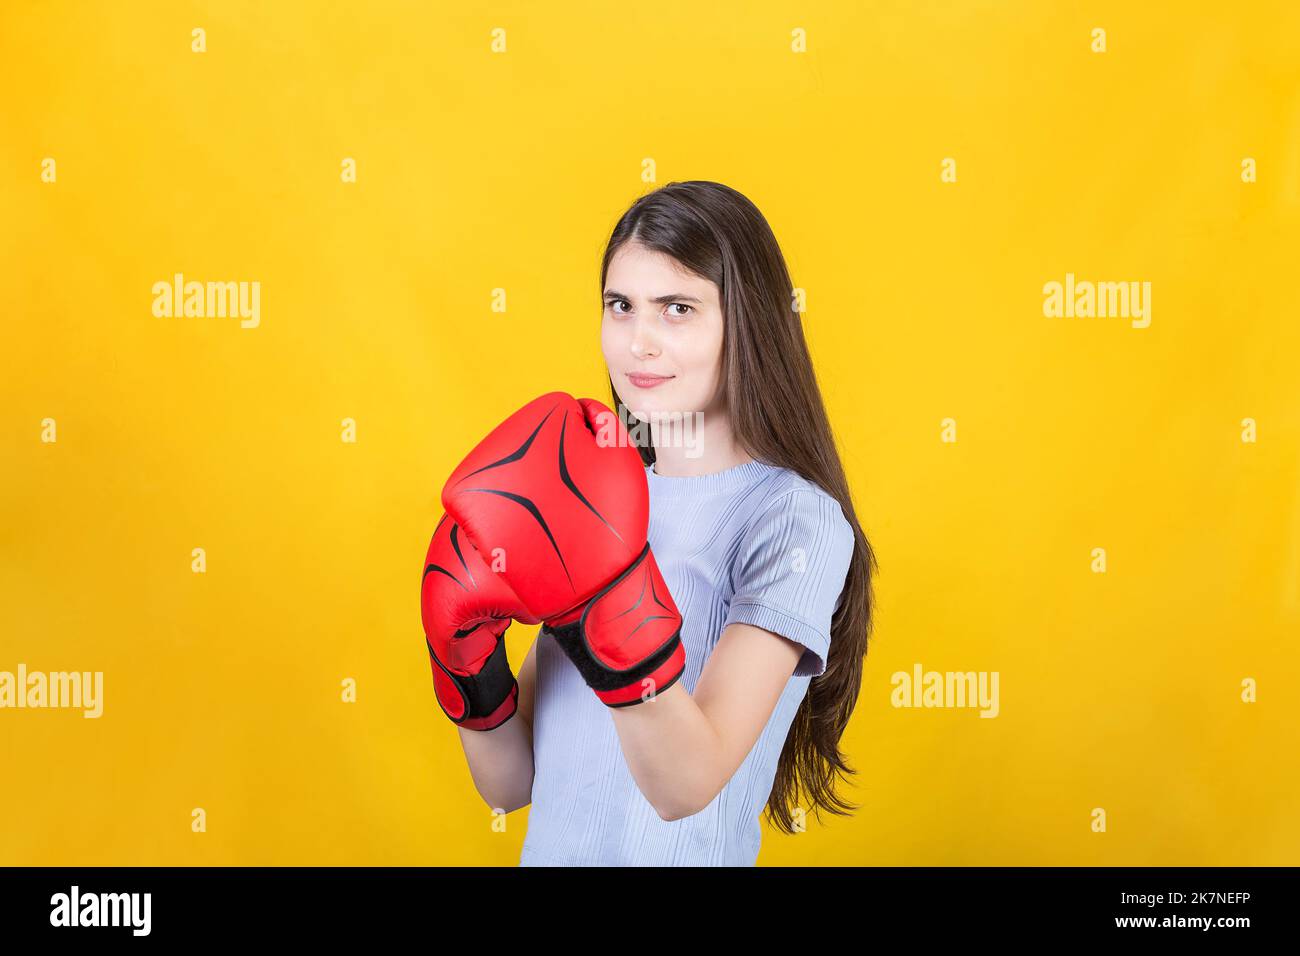 Selbstbewusste junge Frau mit roten Boxhandschuhen steht in Kampfposition. Portrait eines starken und entschlossenen Mädchens, das auf Yello isoliert auf den Kampf vorbereitet ist Stockfoto